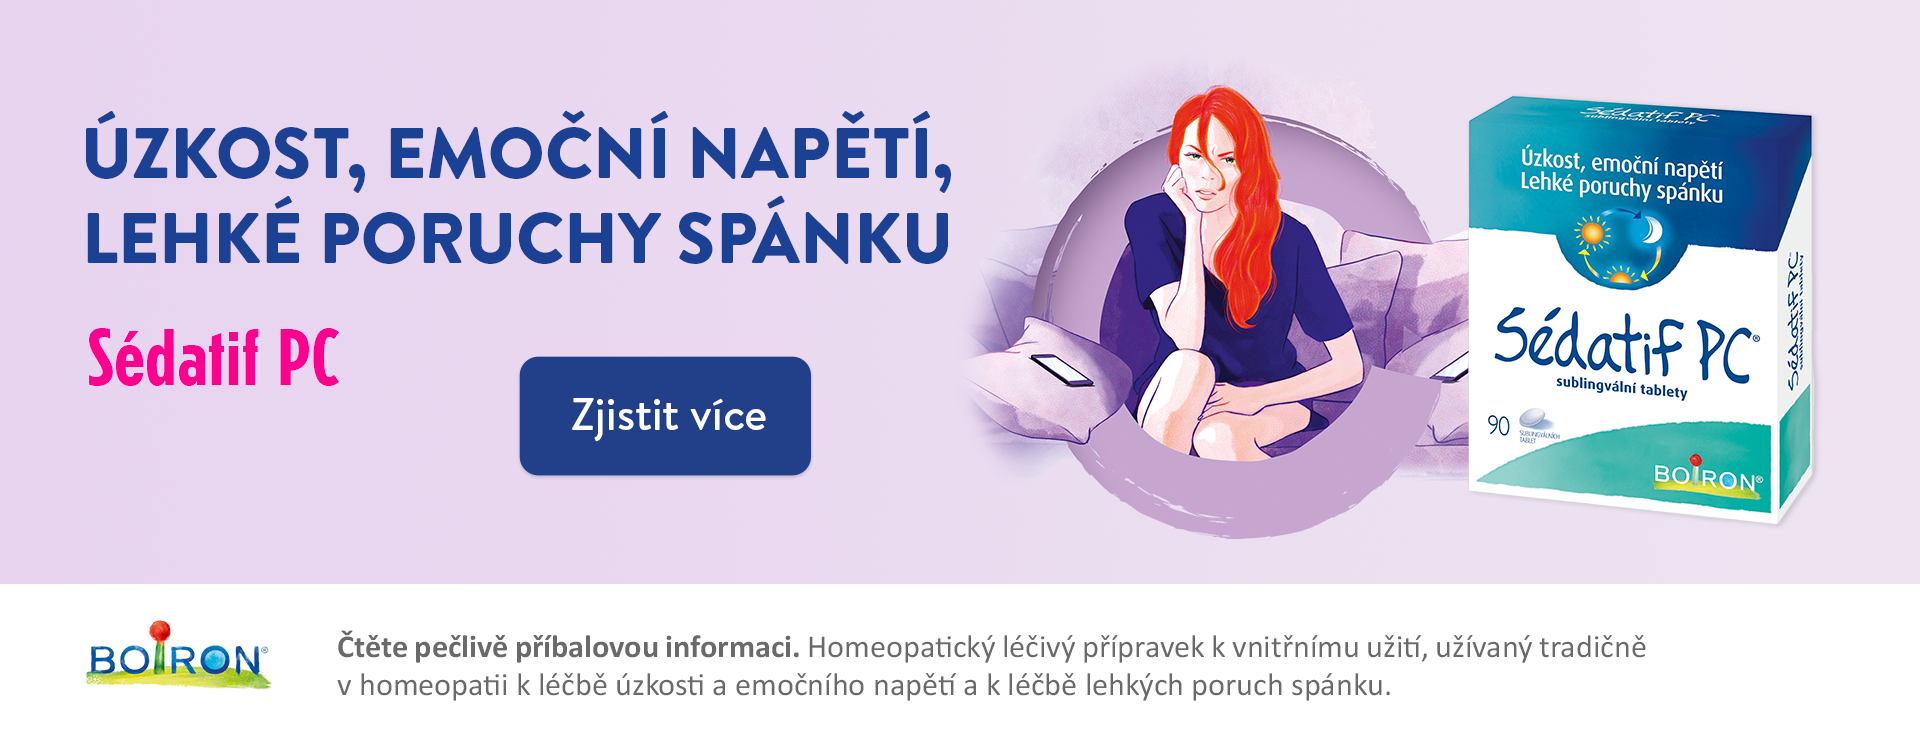 Onlinelekarna.cz | Sedatif PC